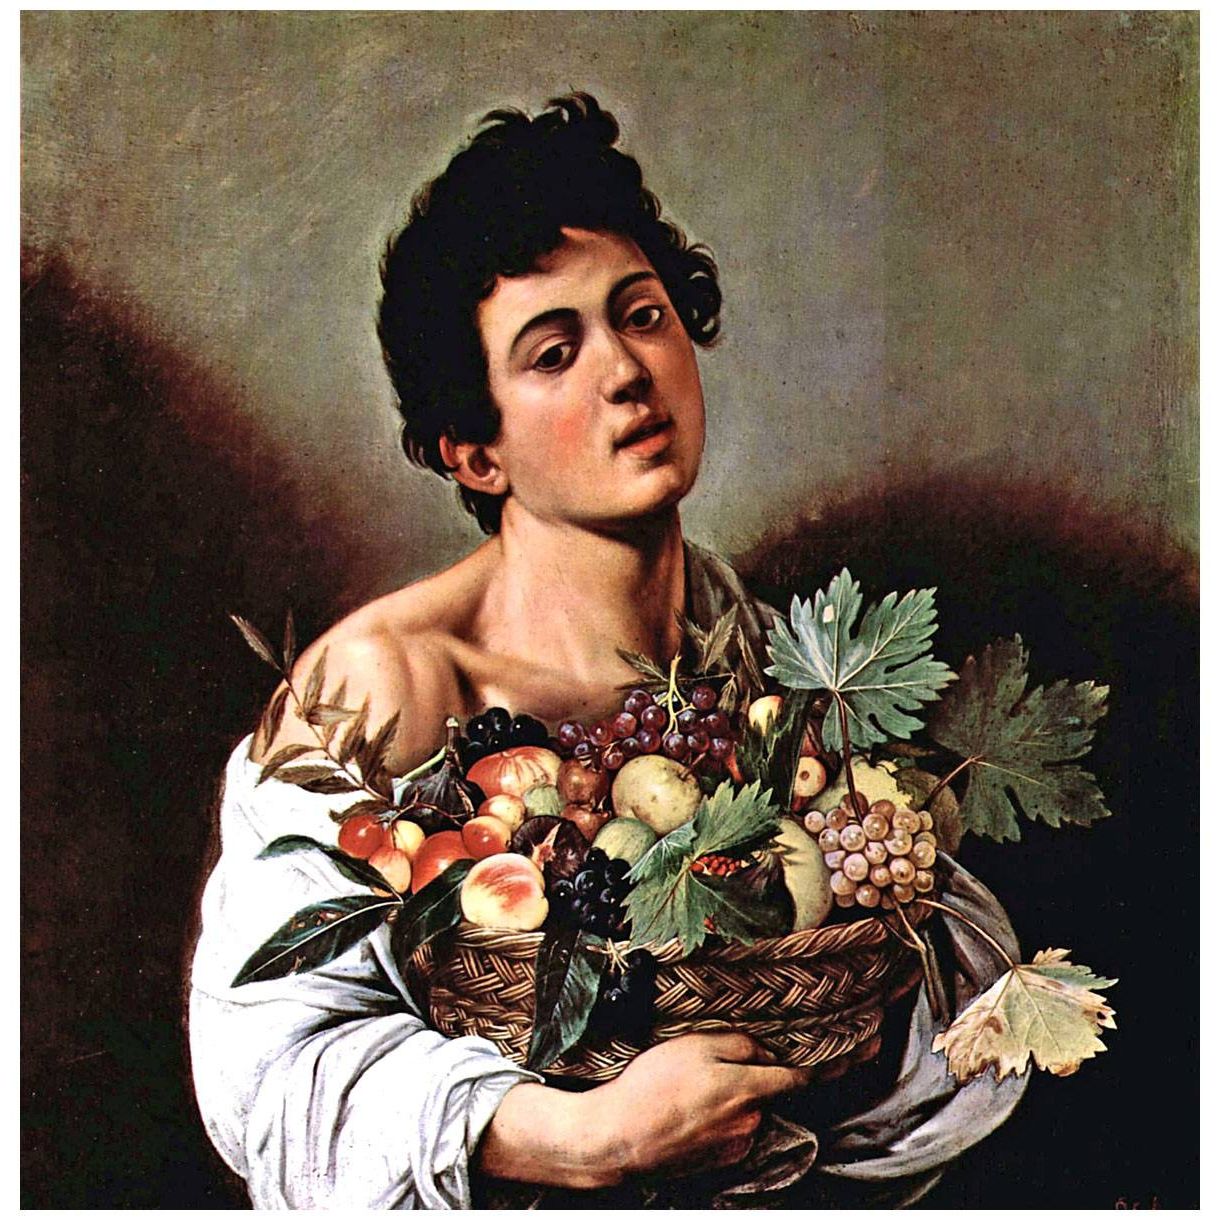 Caravaggio. Giovane con canestra di frutta. 1593. Galleria Borghese Roma